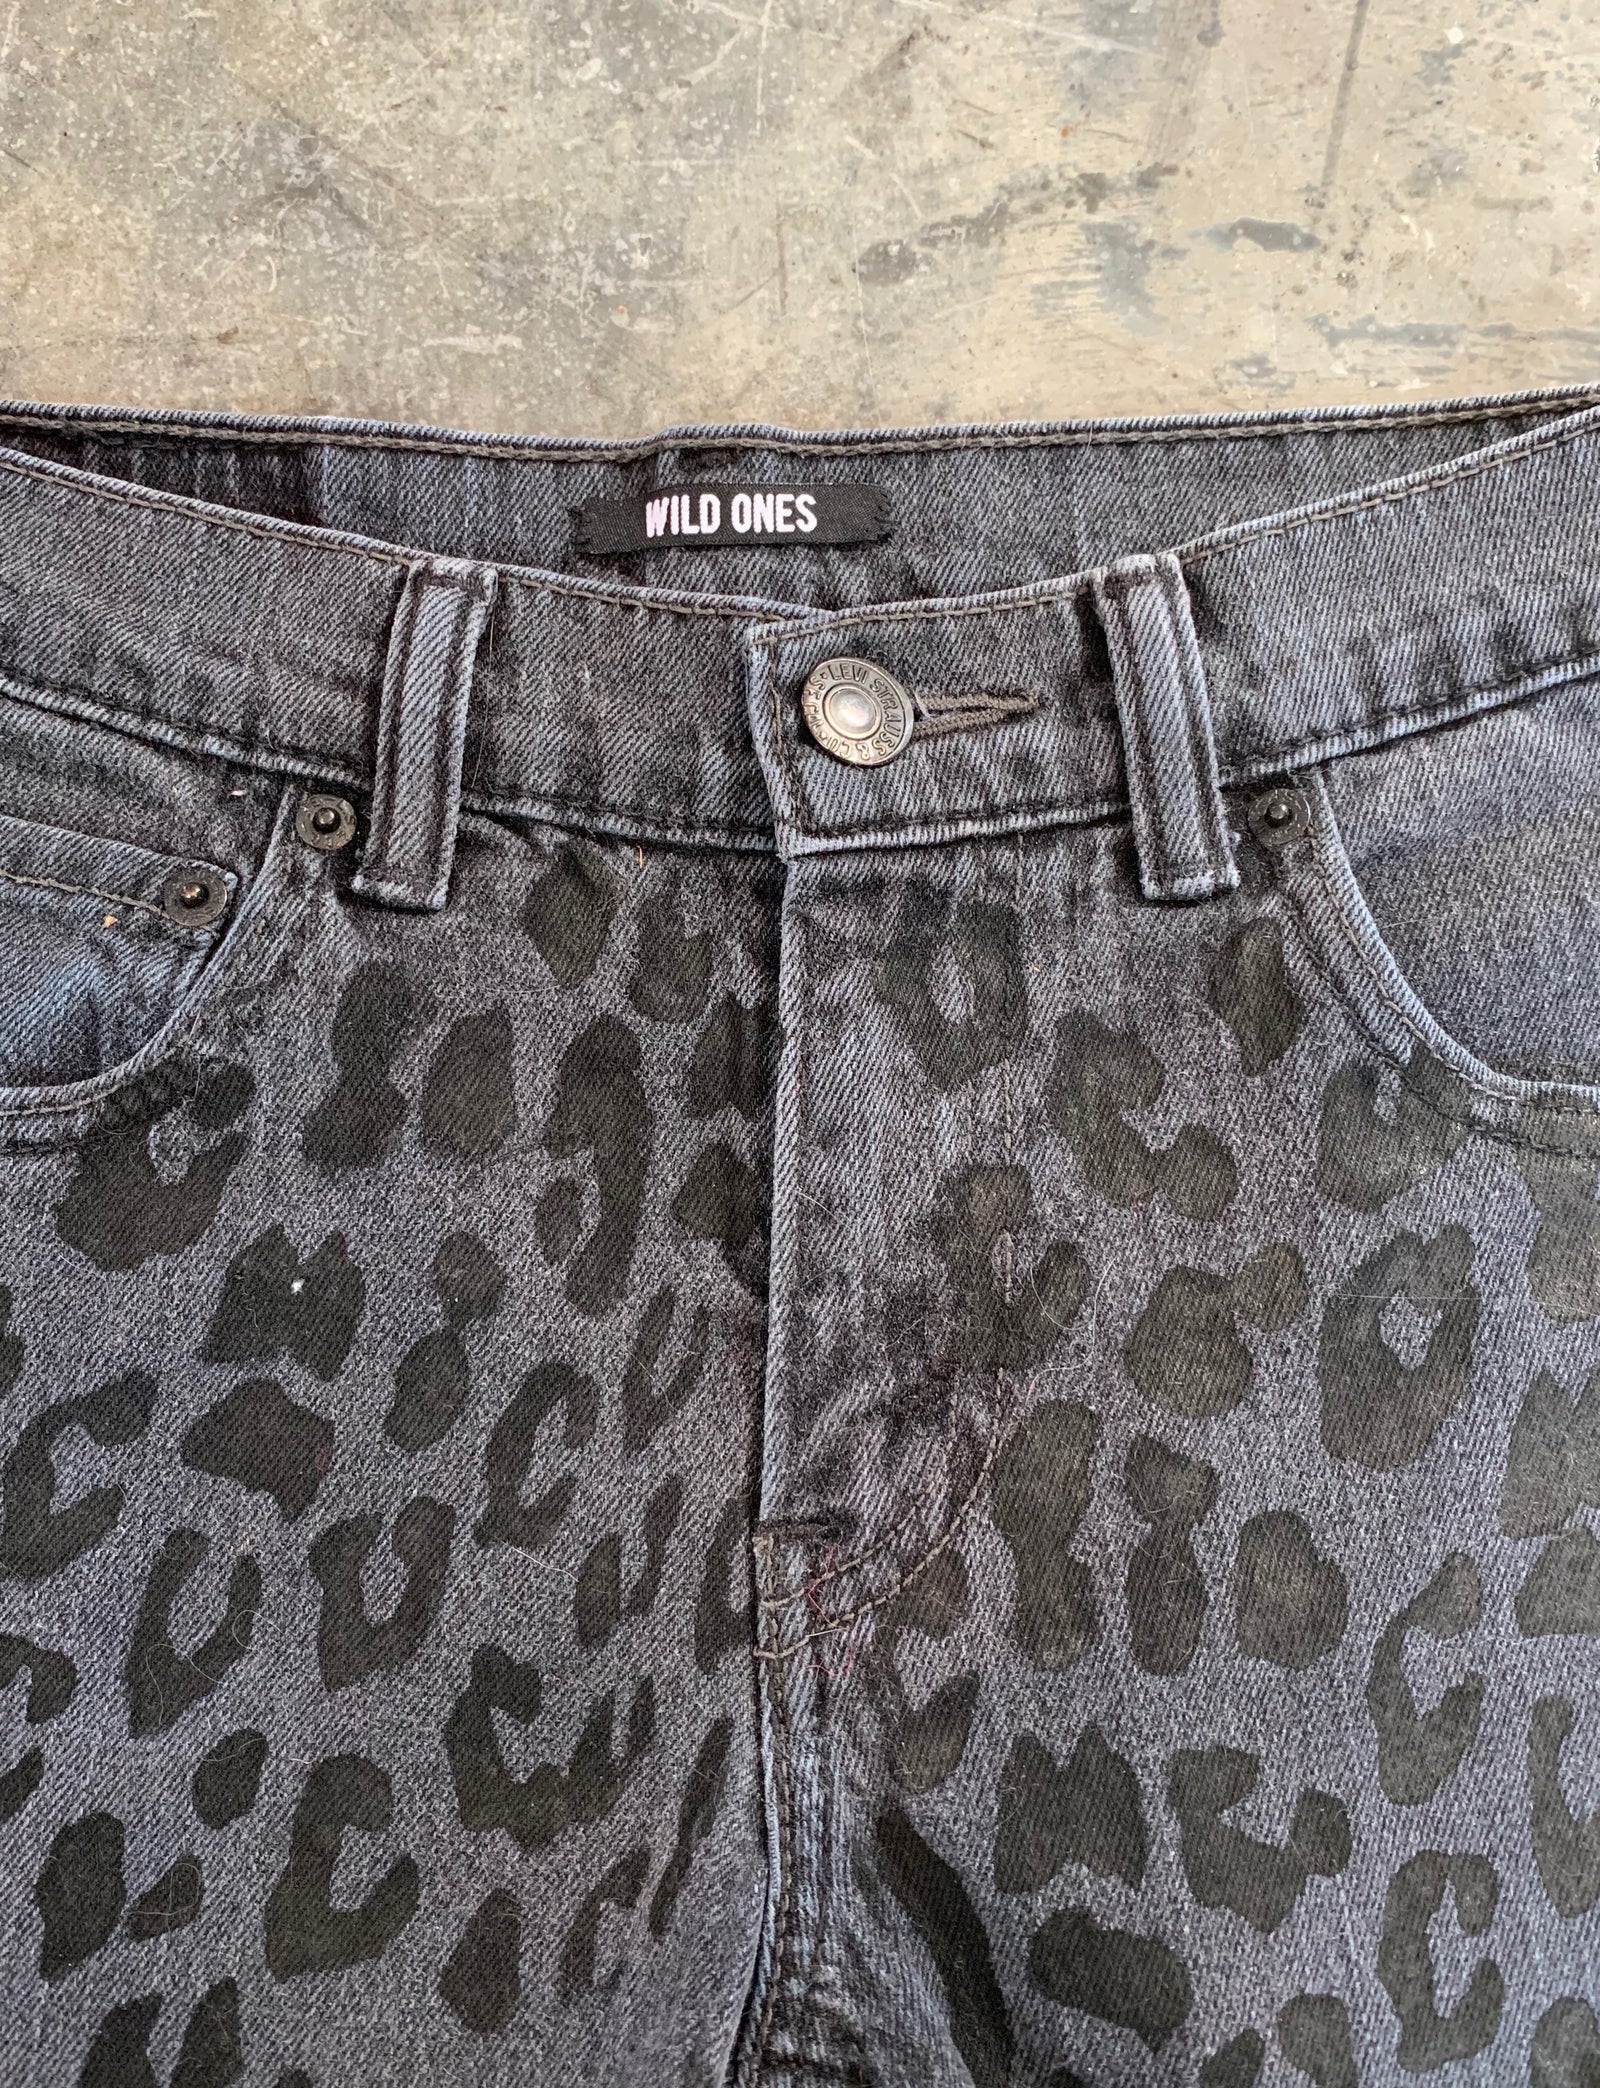 Vintage Women's Black Leopard Print Levis Cut Off Jean Shorts Size 27W –  Black Shag Vintage